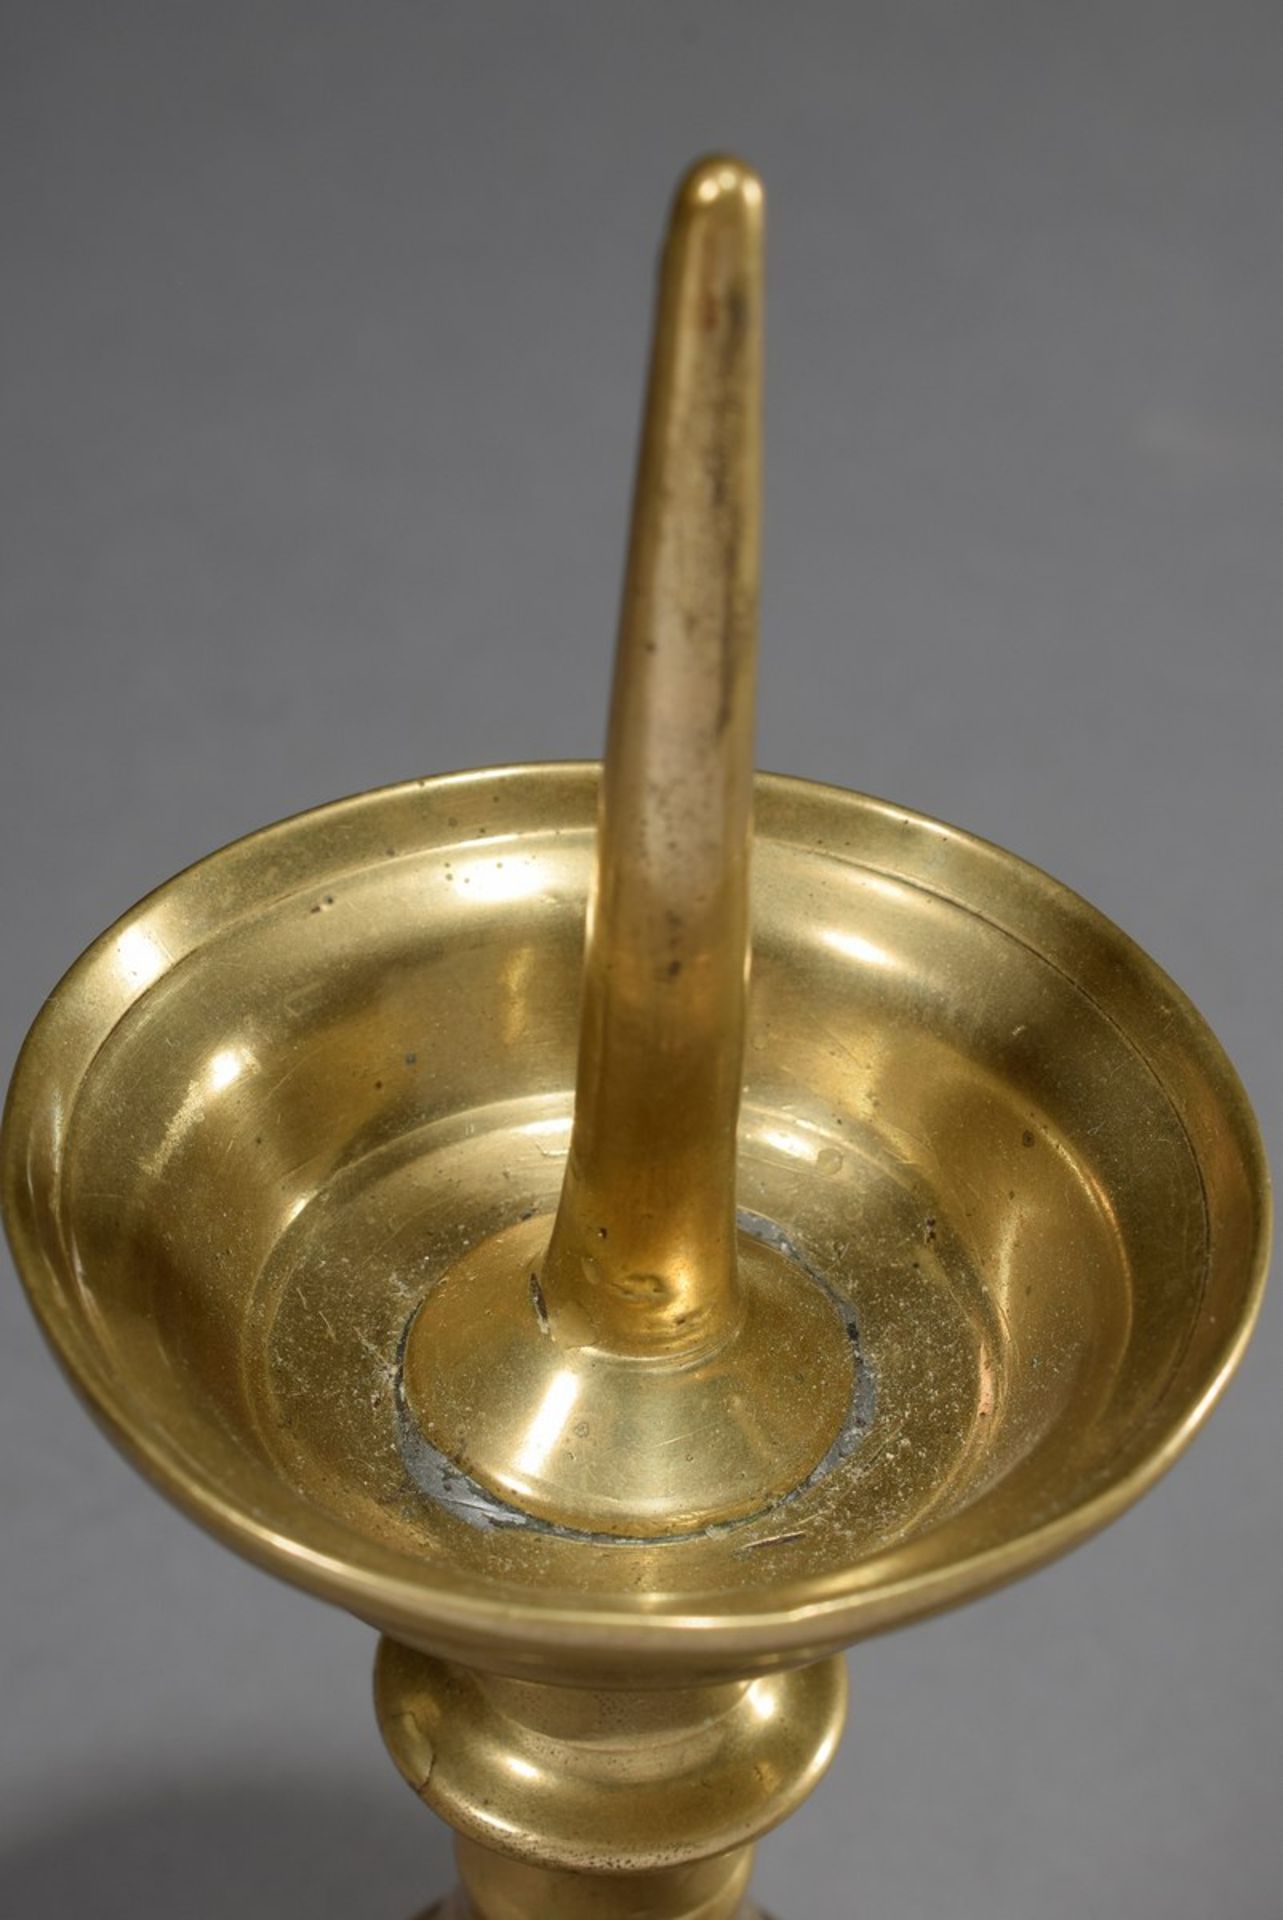 Antiker Gelbguss Leuchter mit abgetreppten Wülst | Antique brass candlestick with stepped beads and - Bild 2 aus 3